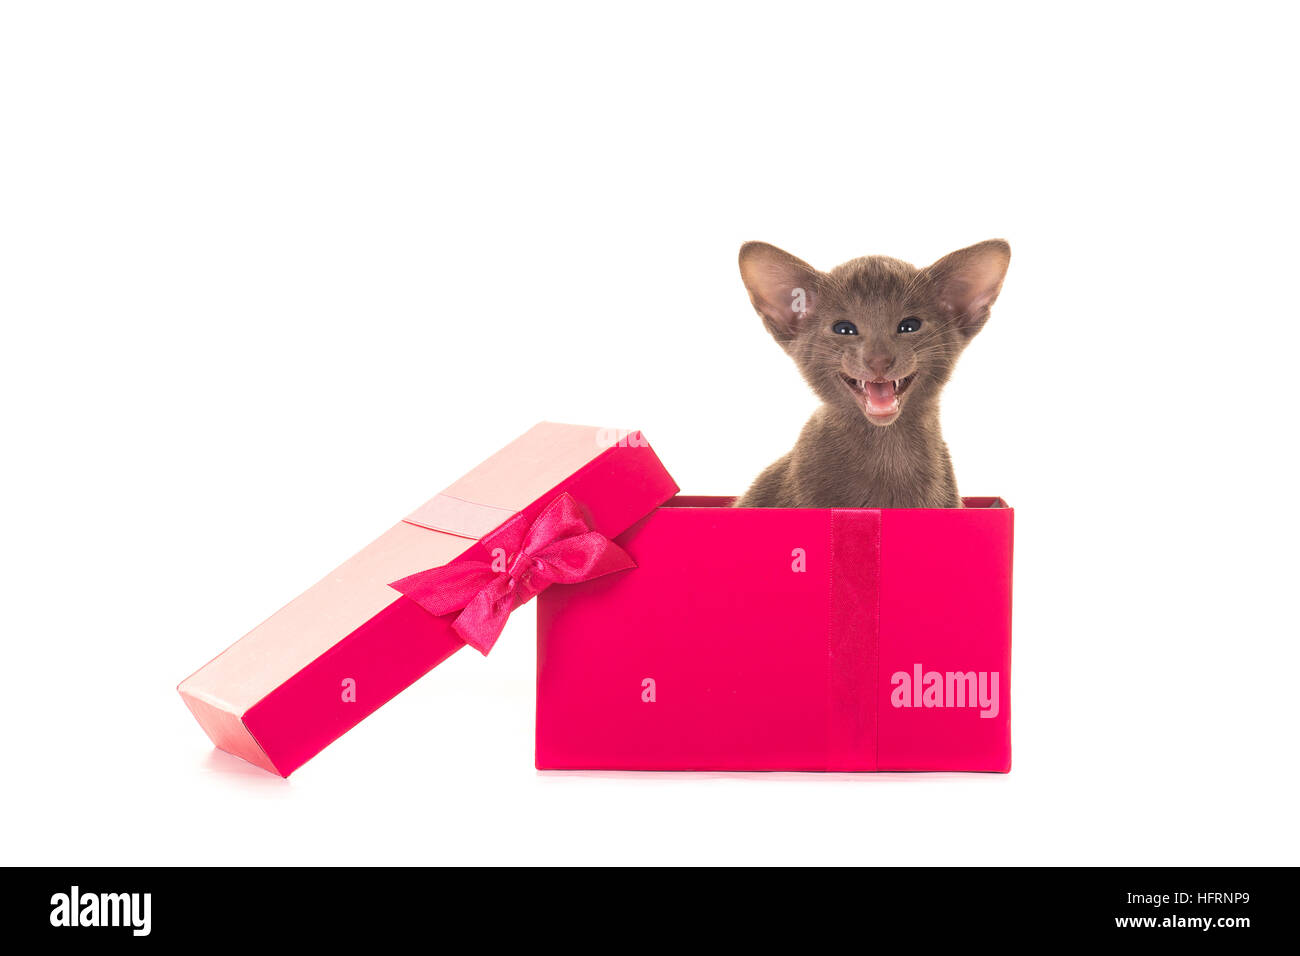 Süße graue Gesang sprechen siamesische Kätzchen Katze in einem rosa Geschenkbox isoliert auf weißem Hintergrund Stockfoto